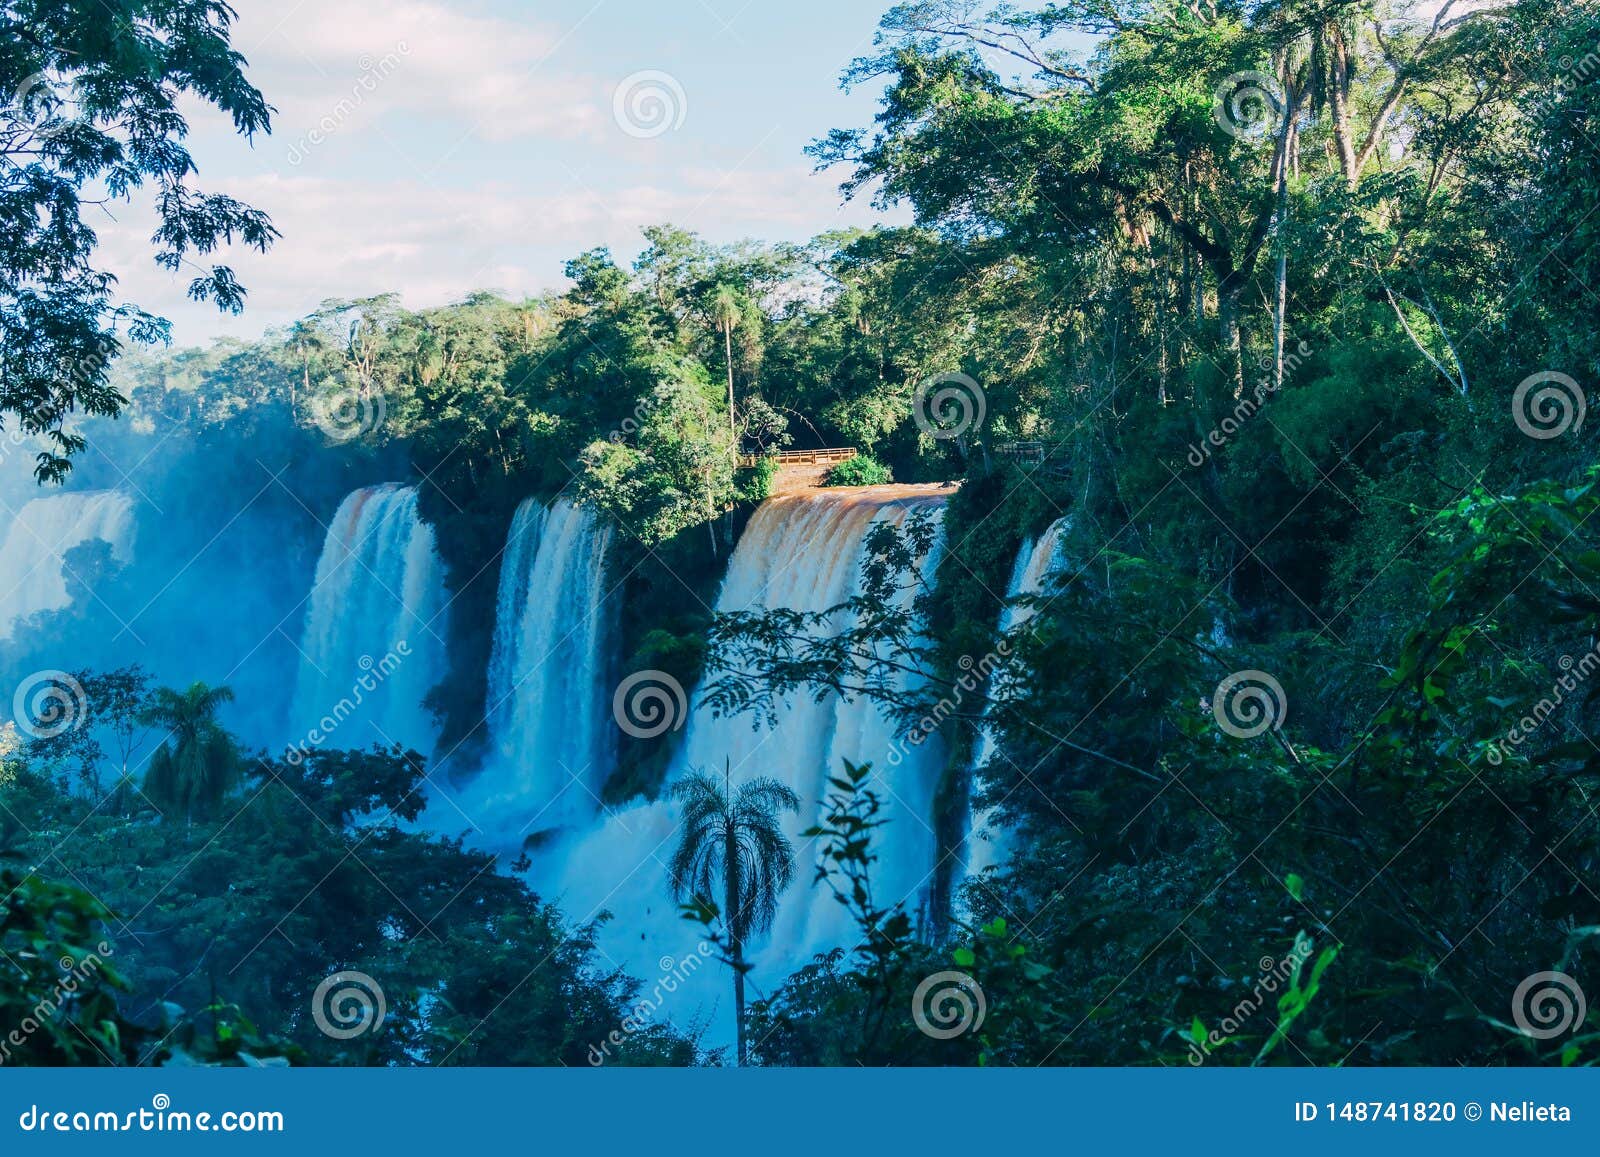 iguazu falls in argentina misiones province